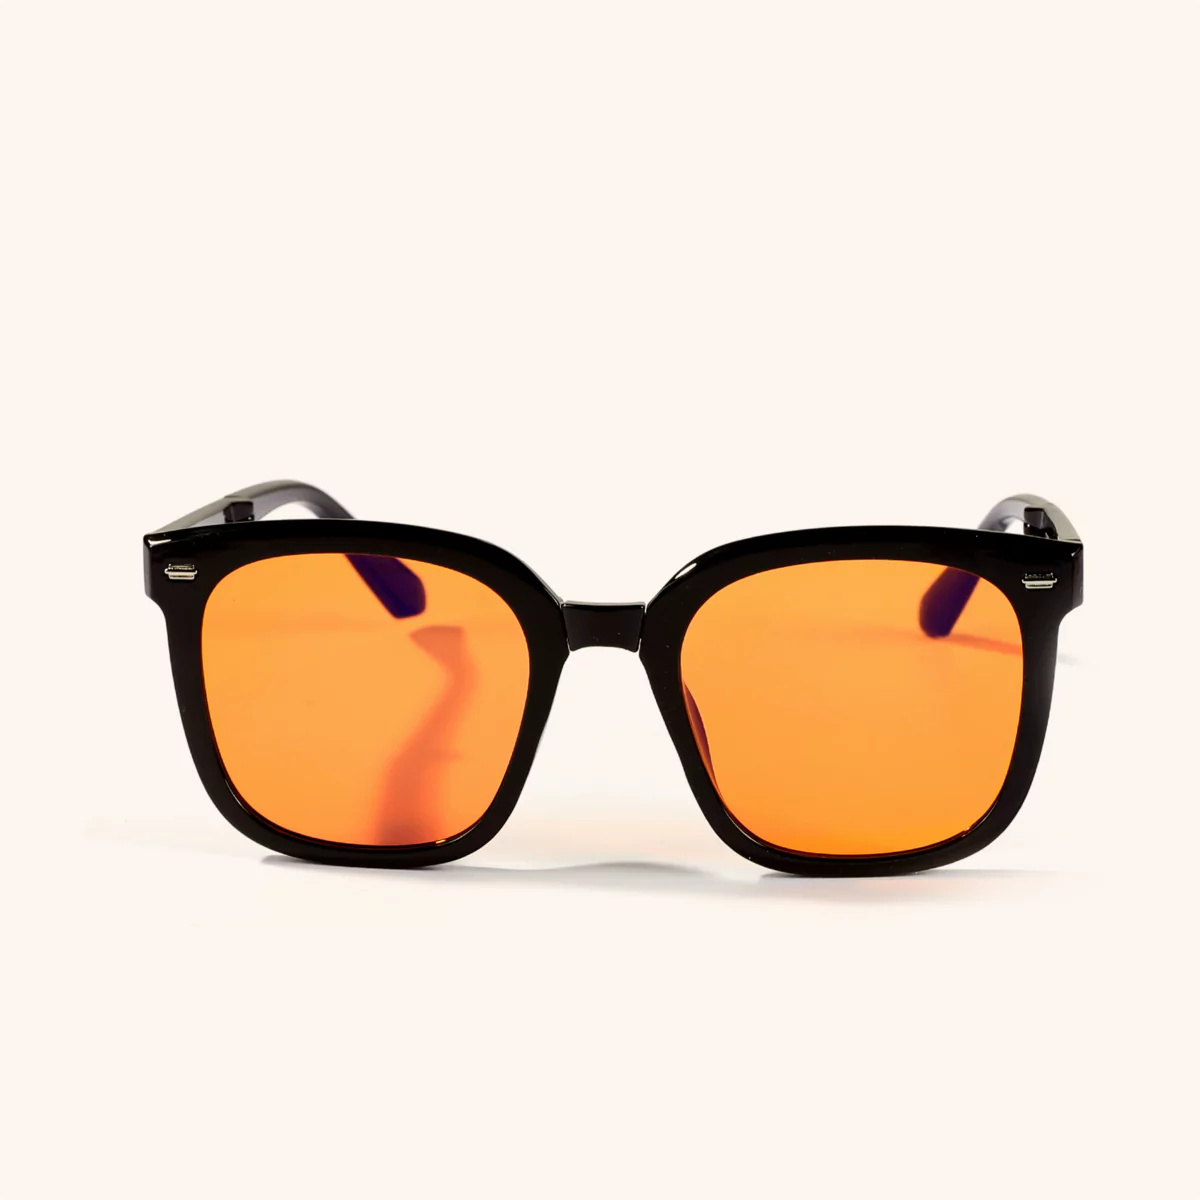 Black-framed sunglasses with orange lenses on a white background.